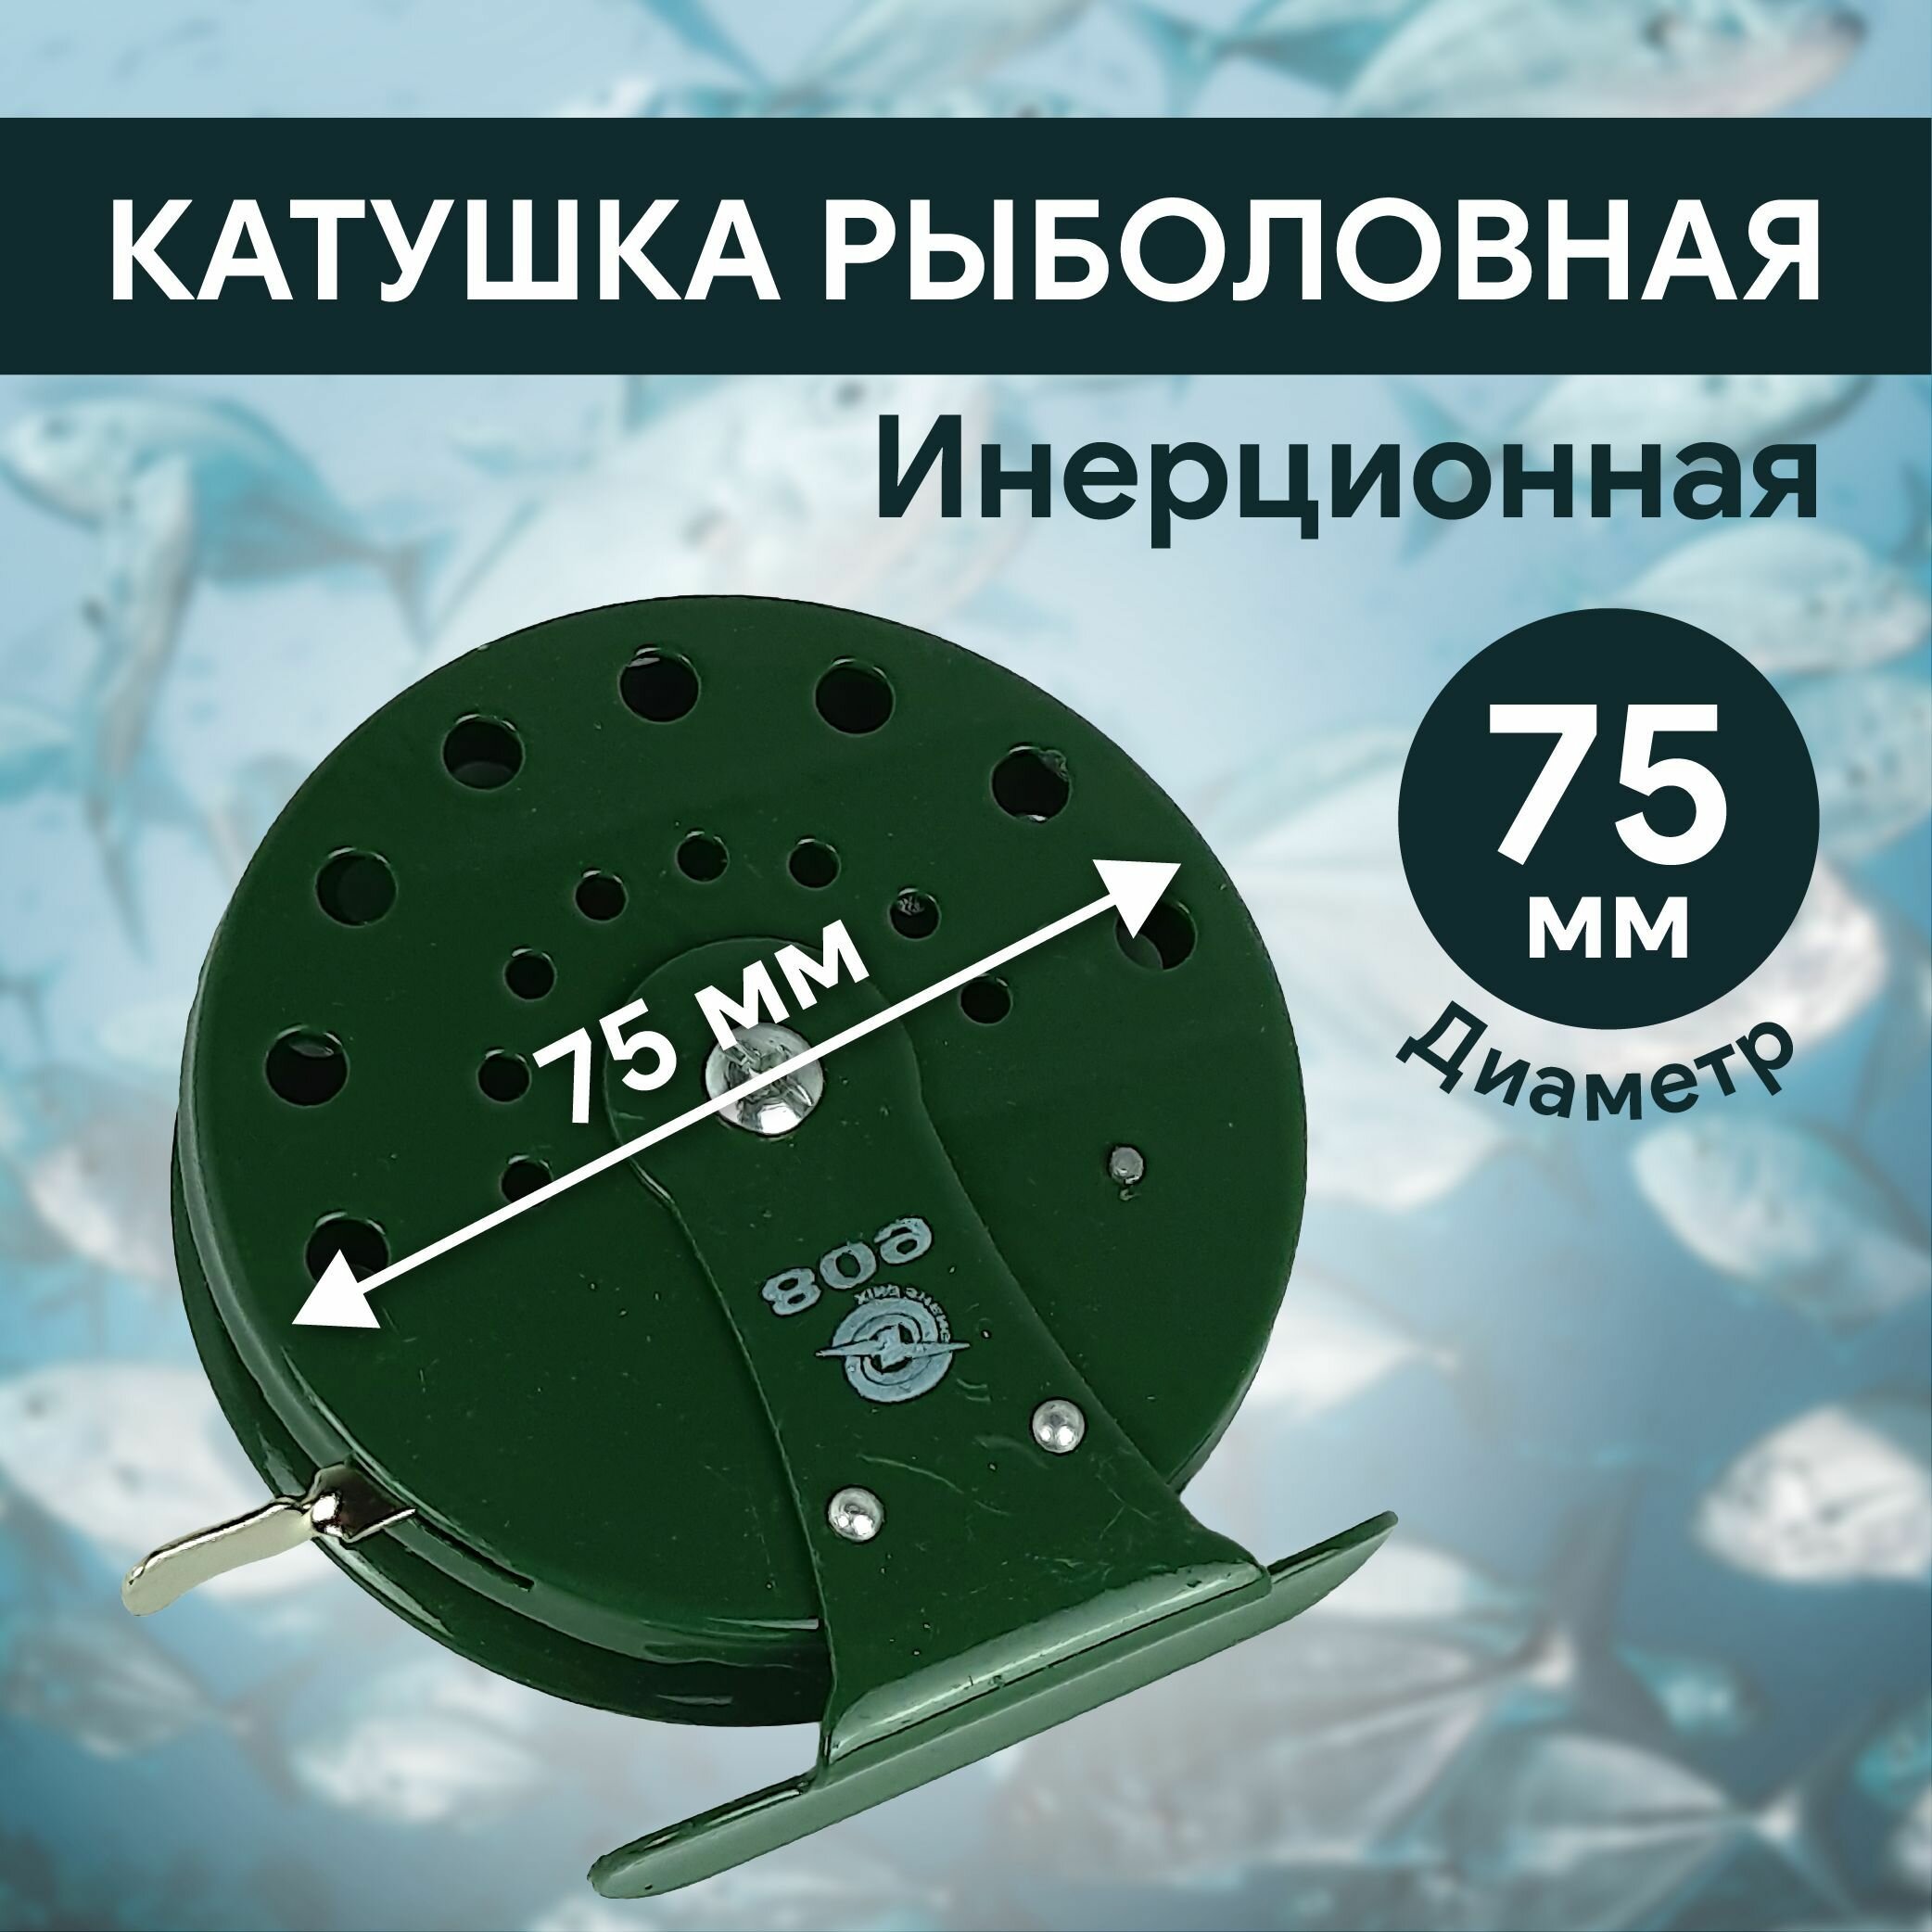 Катушка инерционная для рыбалки для летней D75 мм, металл, арт.: 809